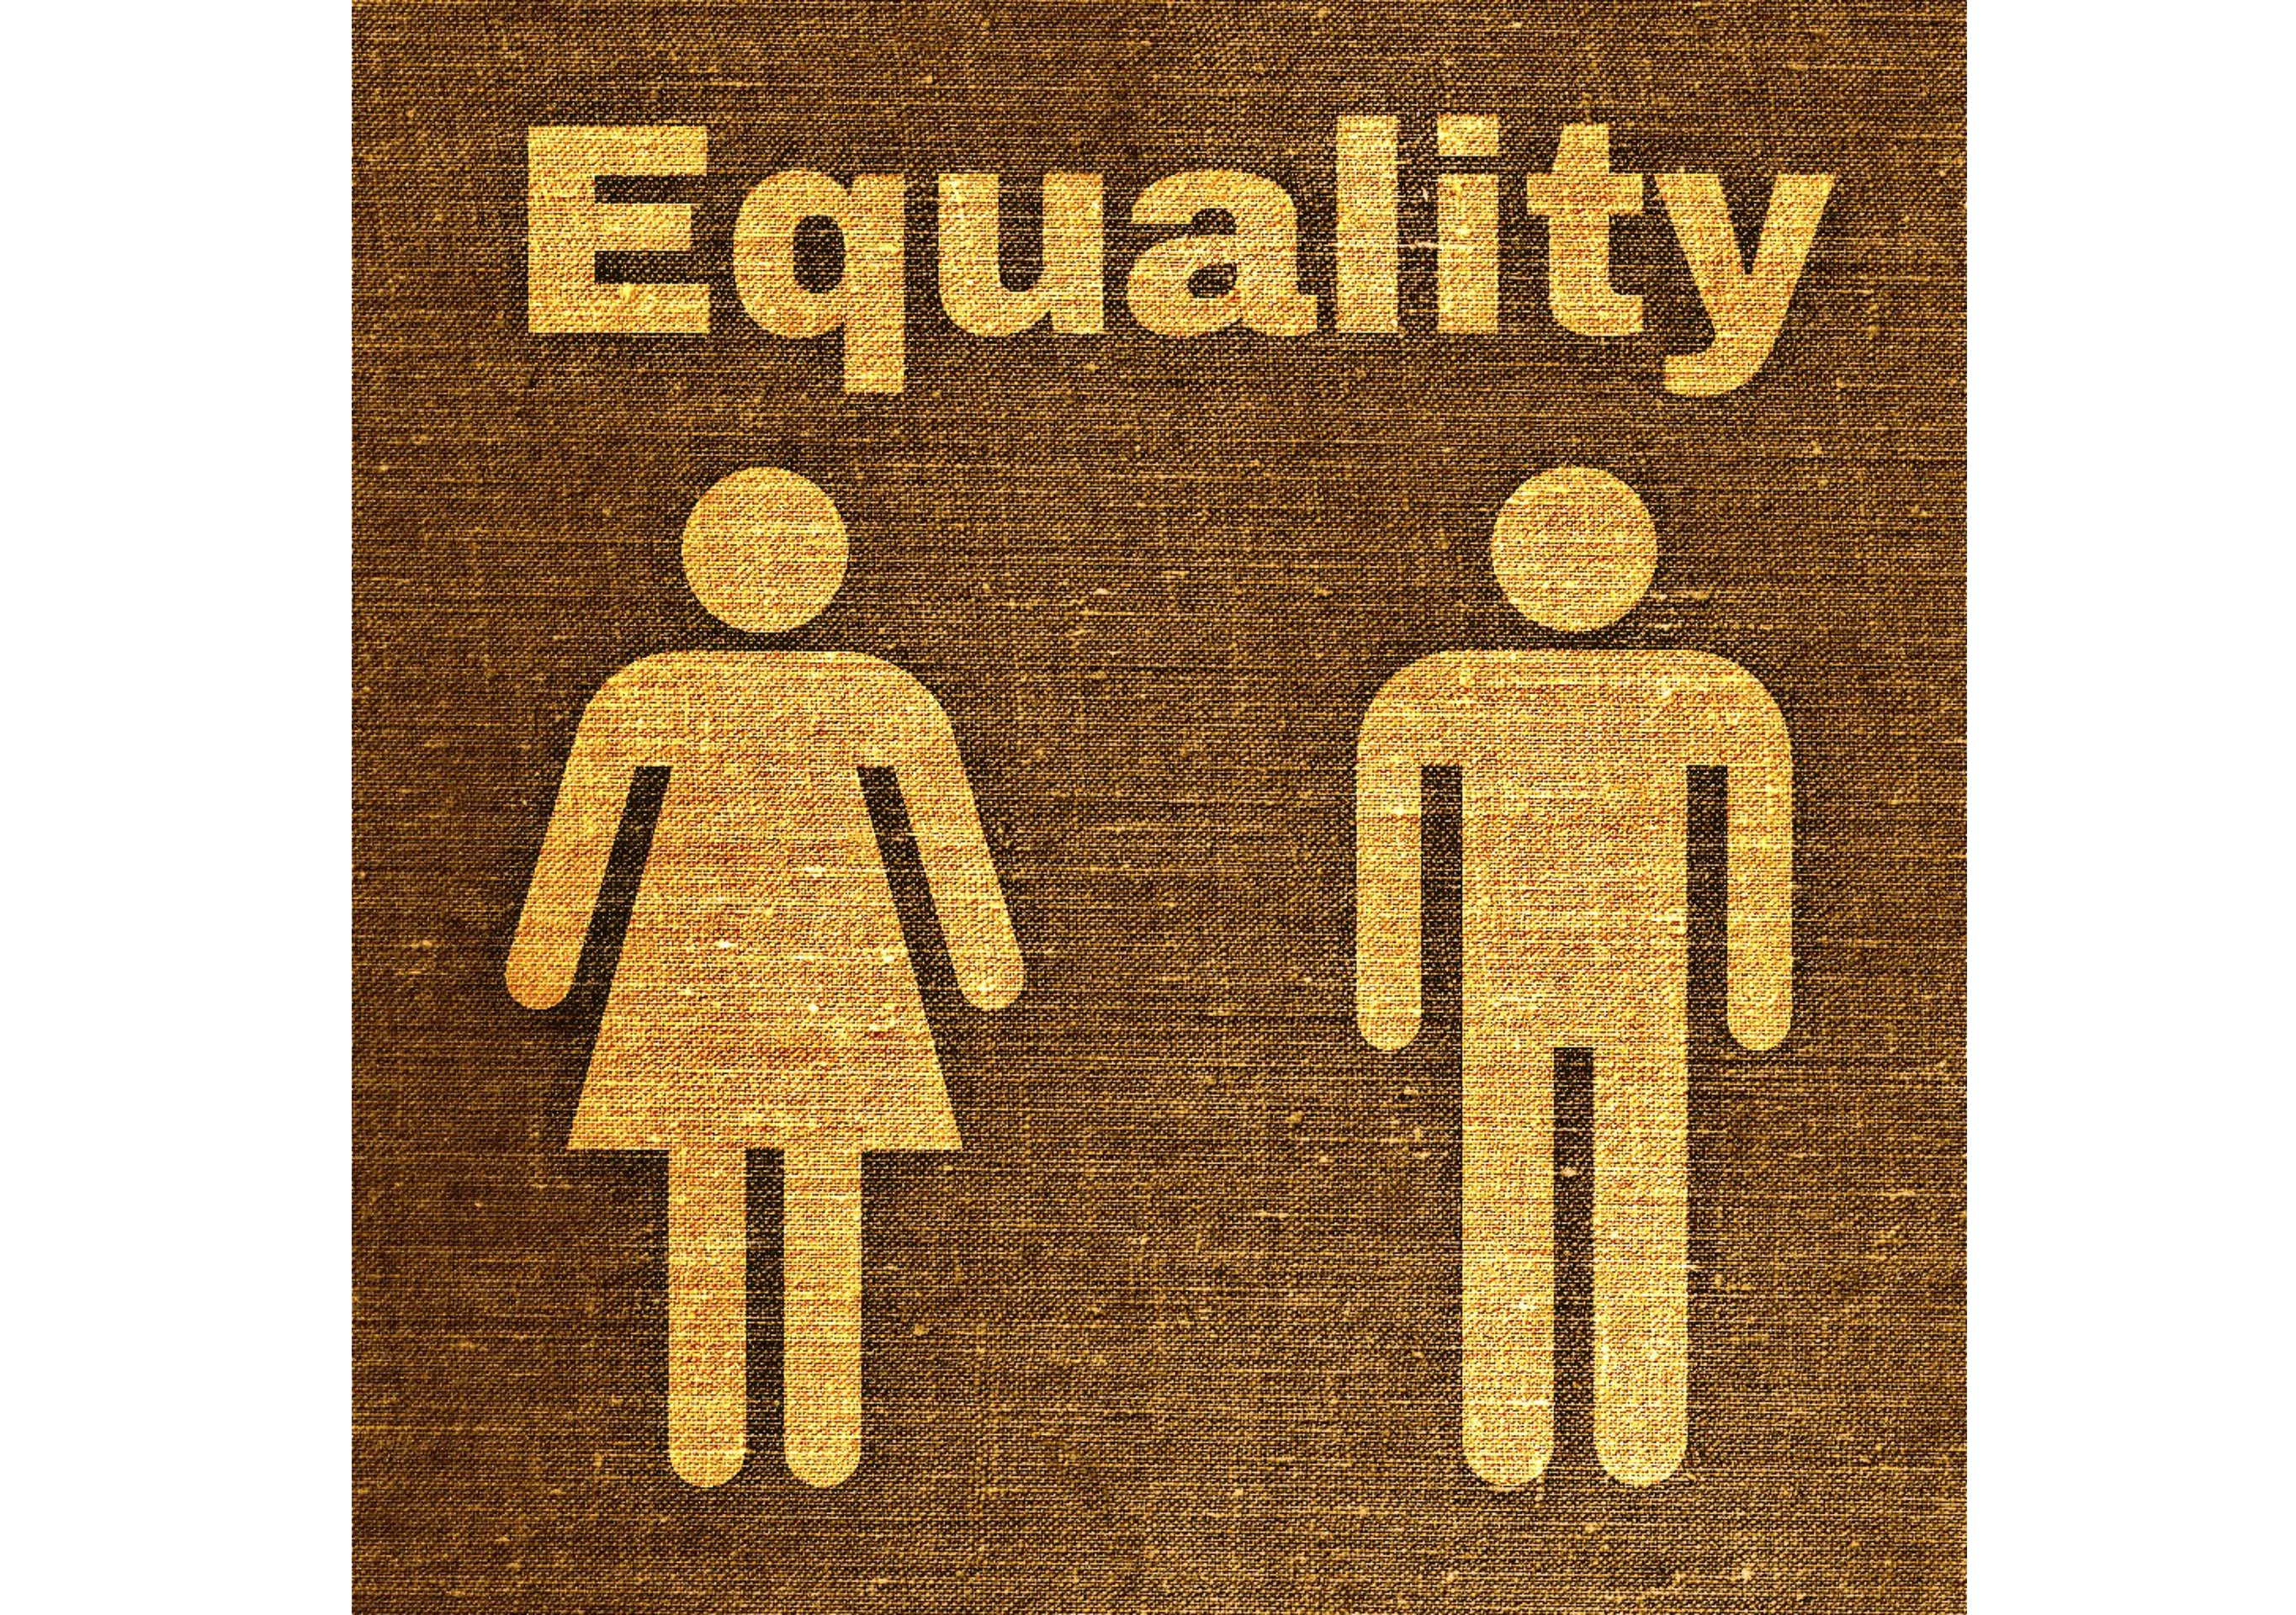 Símbolo de igualdad entre hombres y mujeres